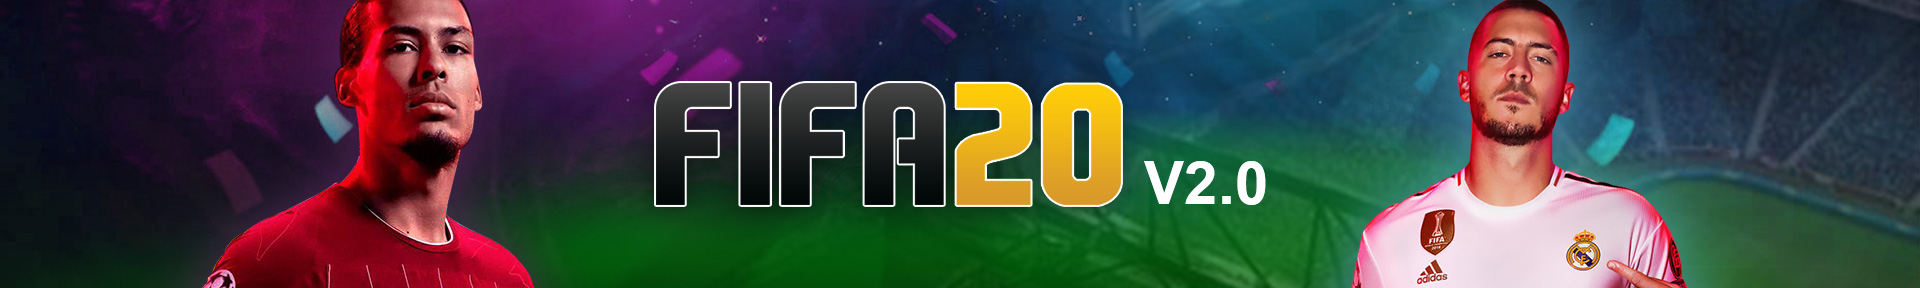 FIFA 20 Comfort Trade V2.0